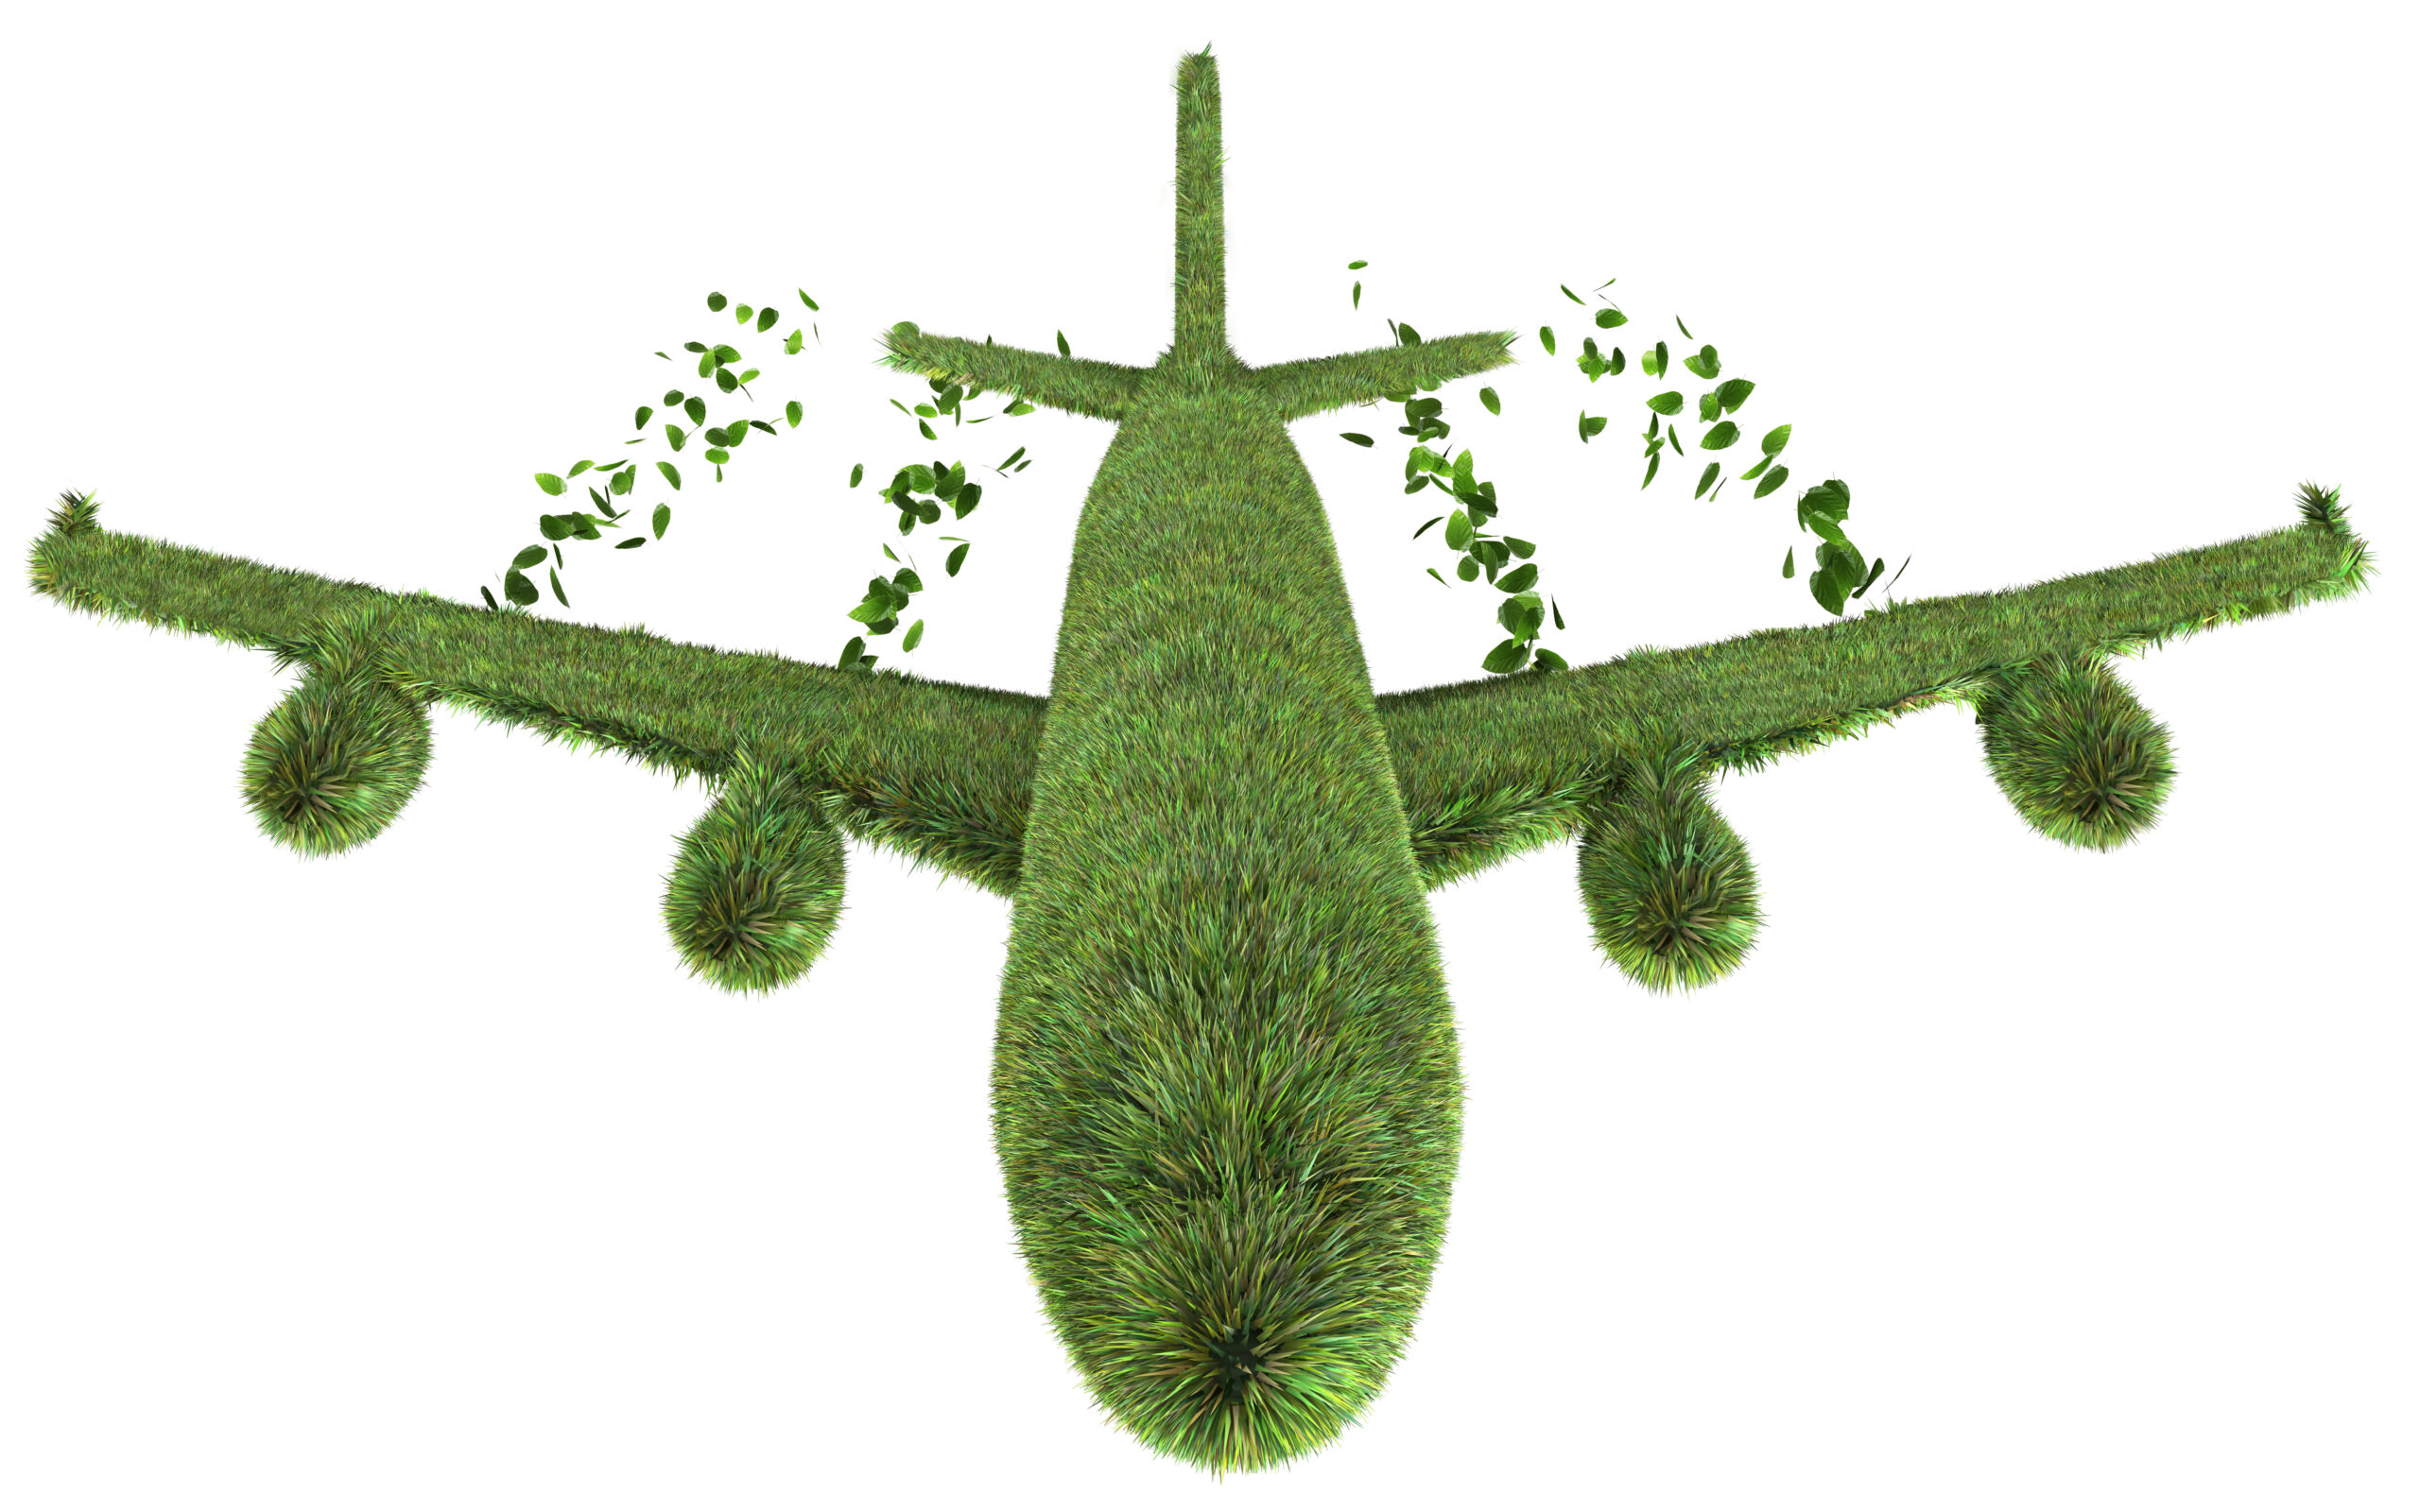 هوانوردی هواپیما سوخت های سبز بیوفیول